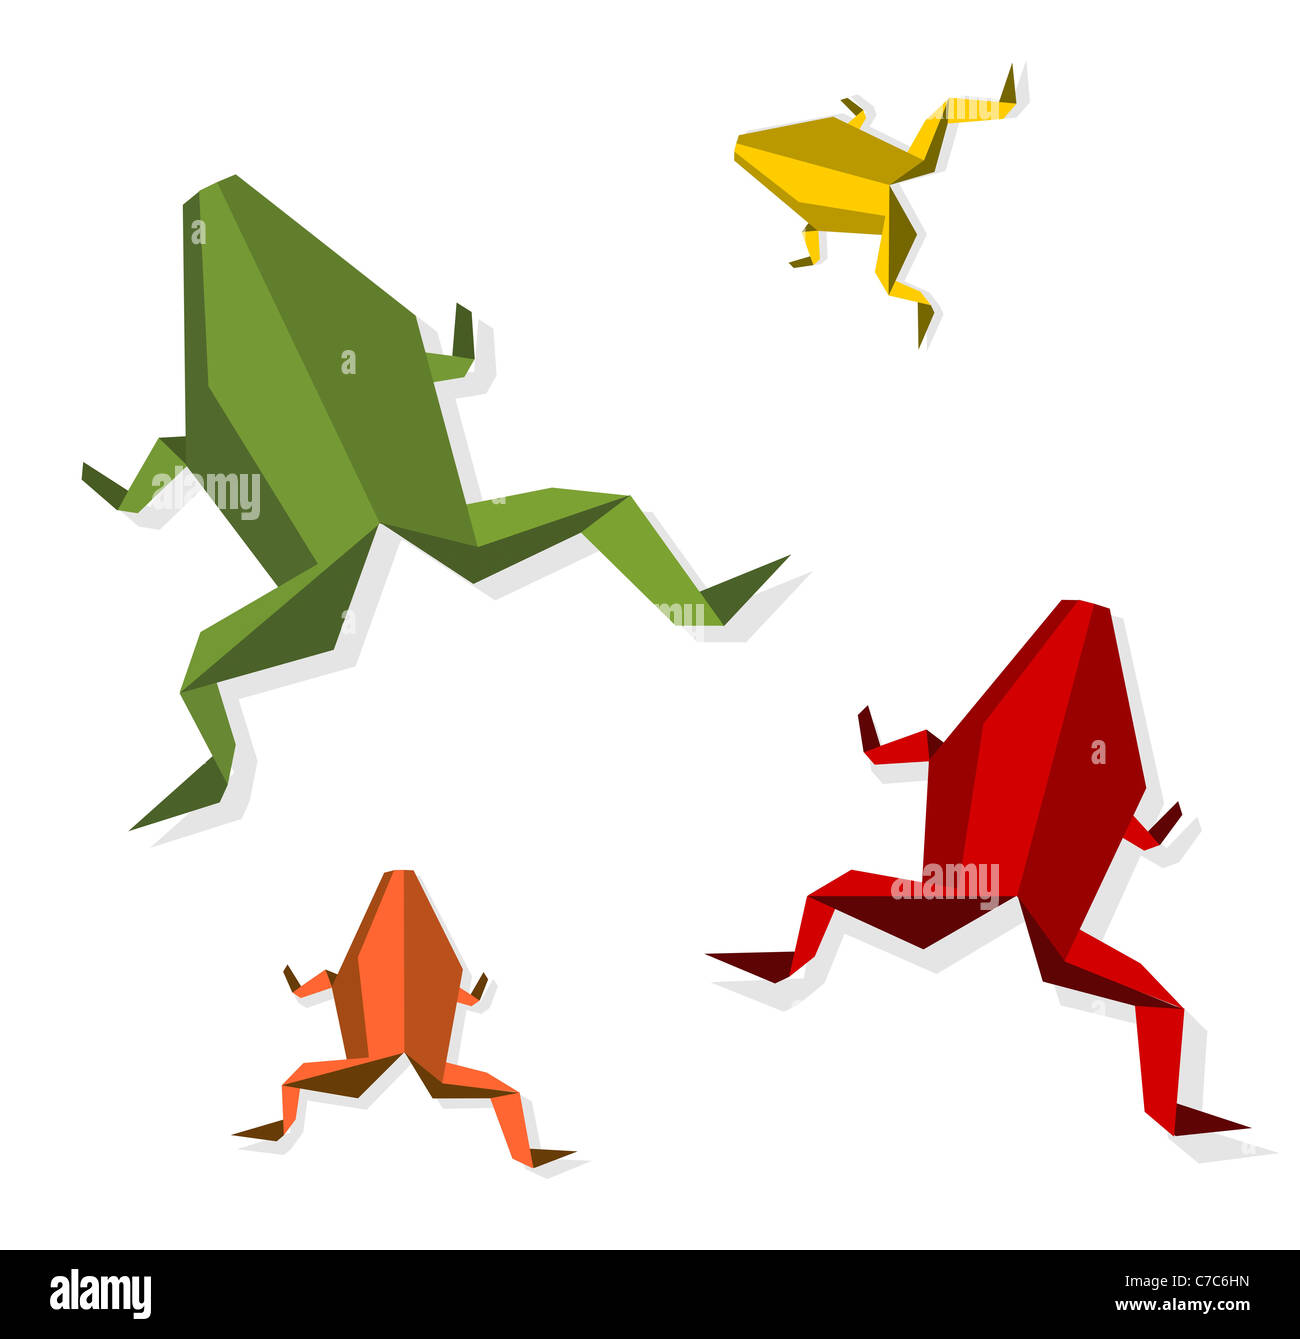 Gruppo di origami vari colori vibranti rana. File vettoriale disponibile. Foto Stock